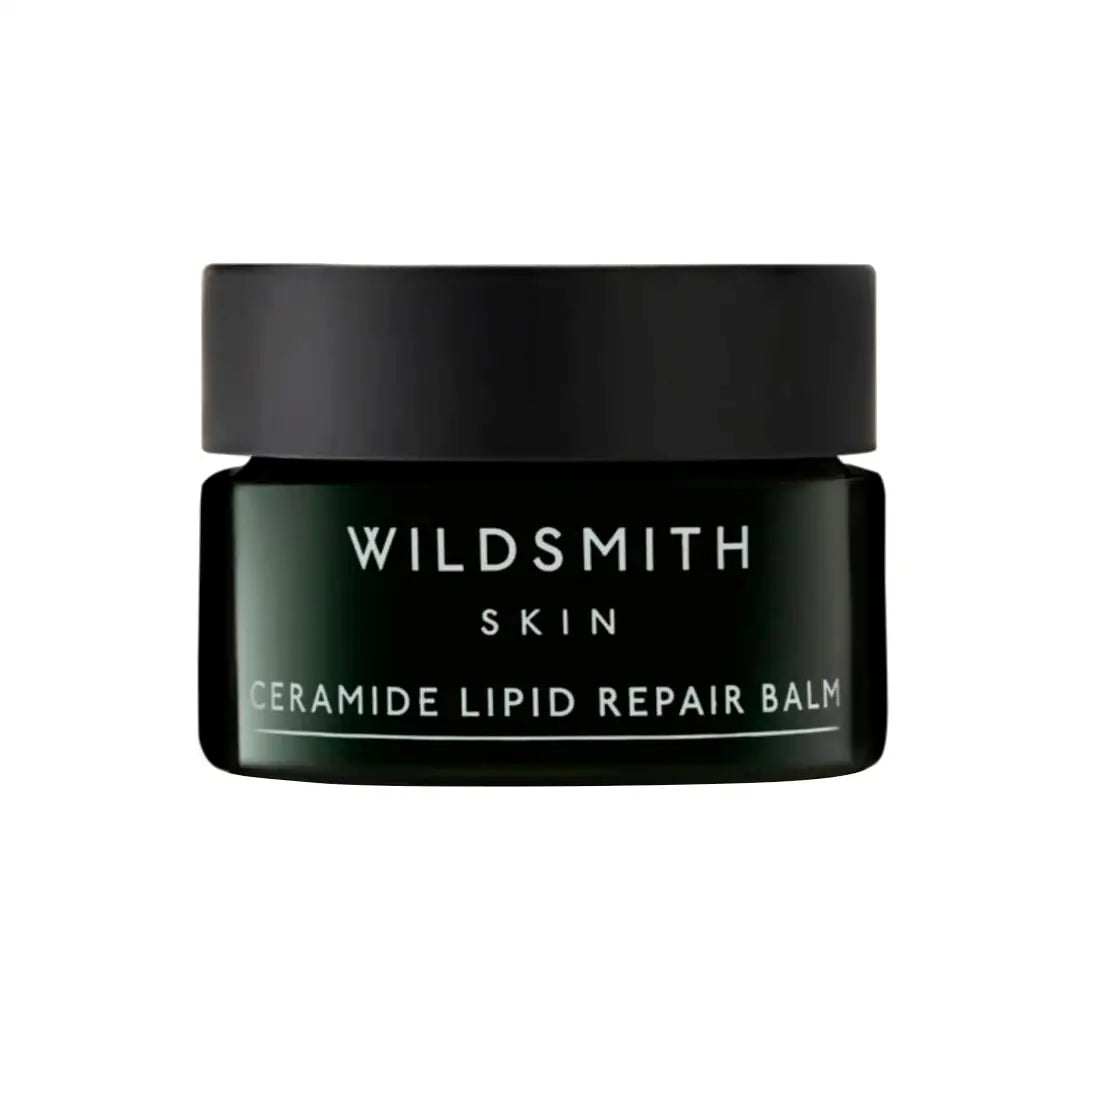 Wildsmith Skin Ceramide Lipid Repair Balm 12.75gr - Free 